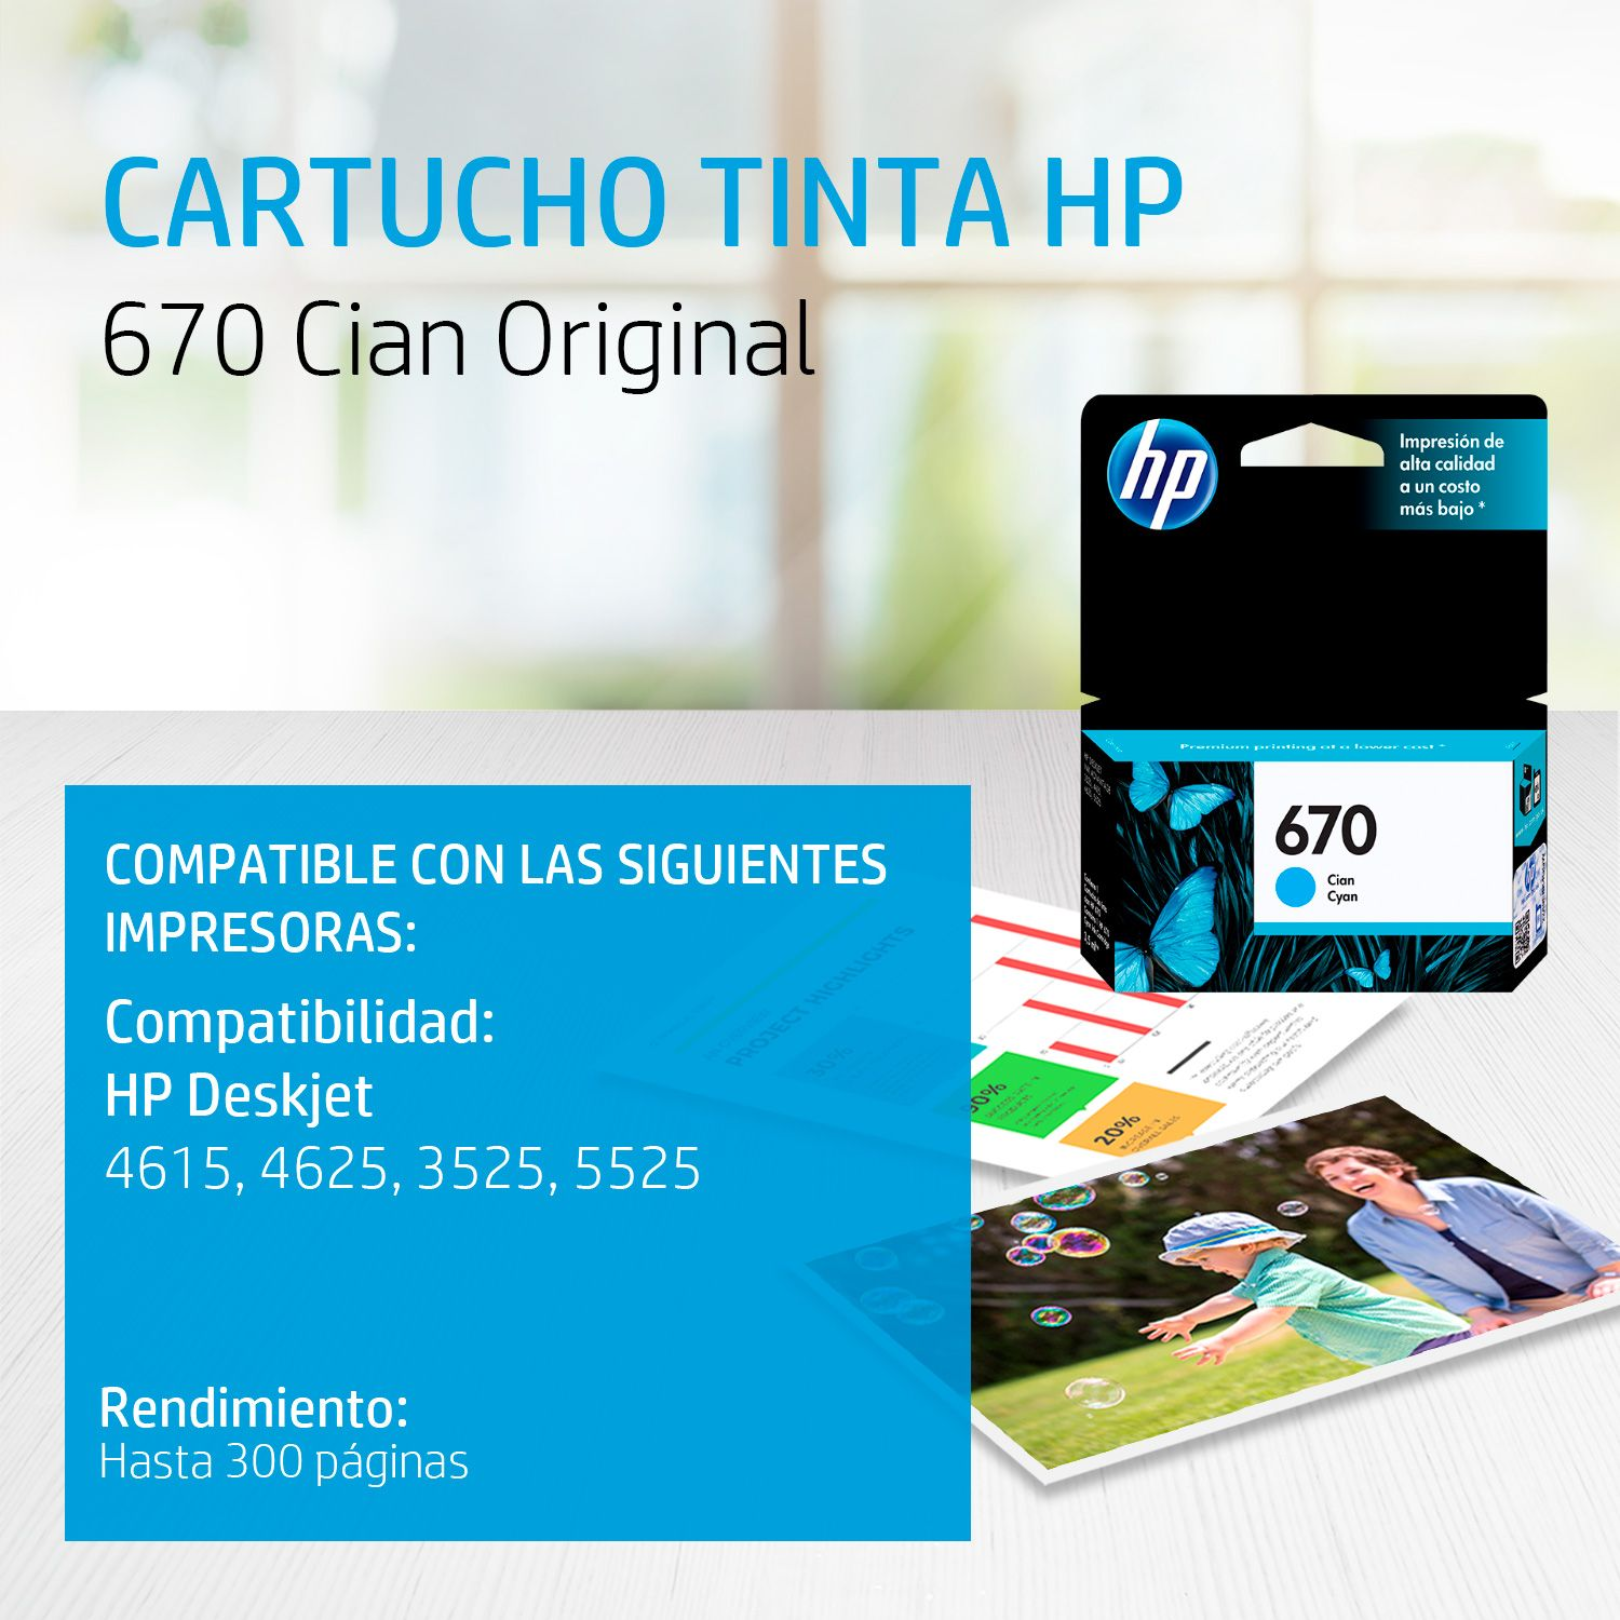 Cartucho de tinta HP 670 Cian (CZ114AL) DeskJet 3525/4615/4625/5525 300 Pag.